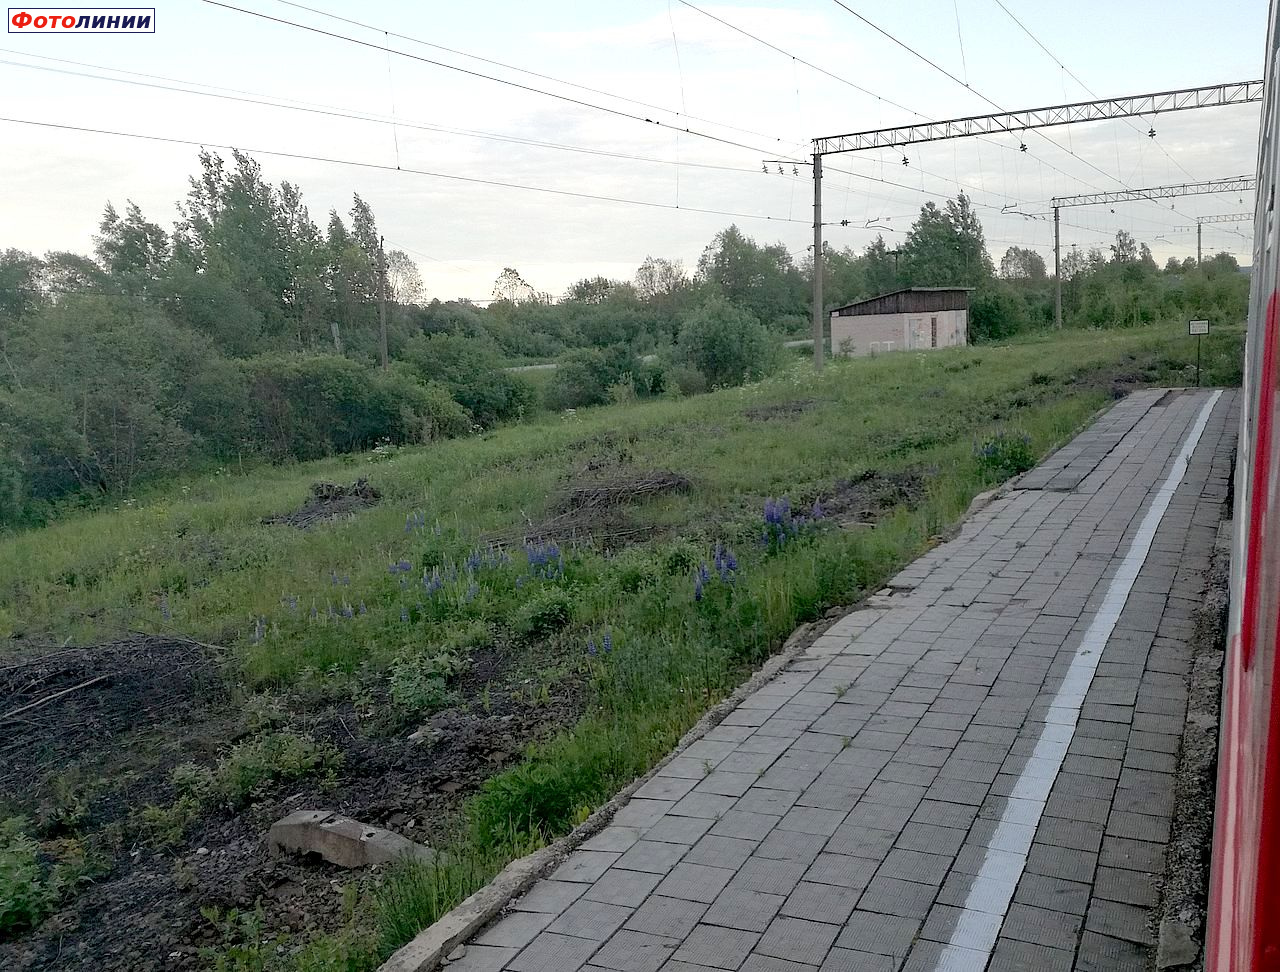 Платформа и остатки путей бывшей станции Гостинополье, вид в сторону ст. Глажево